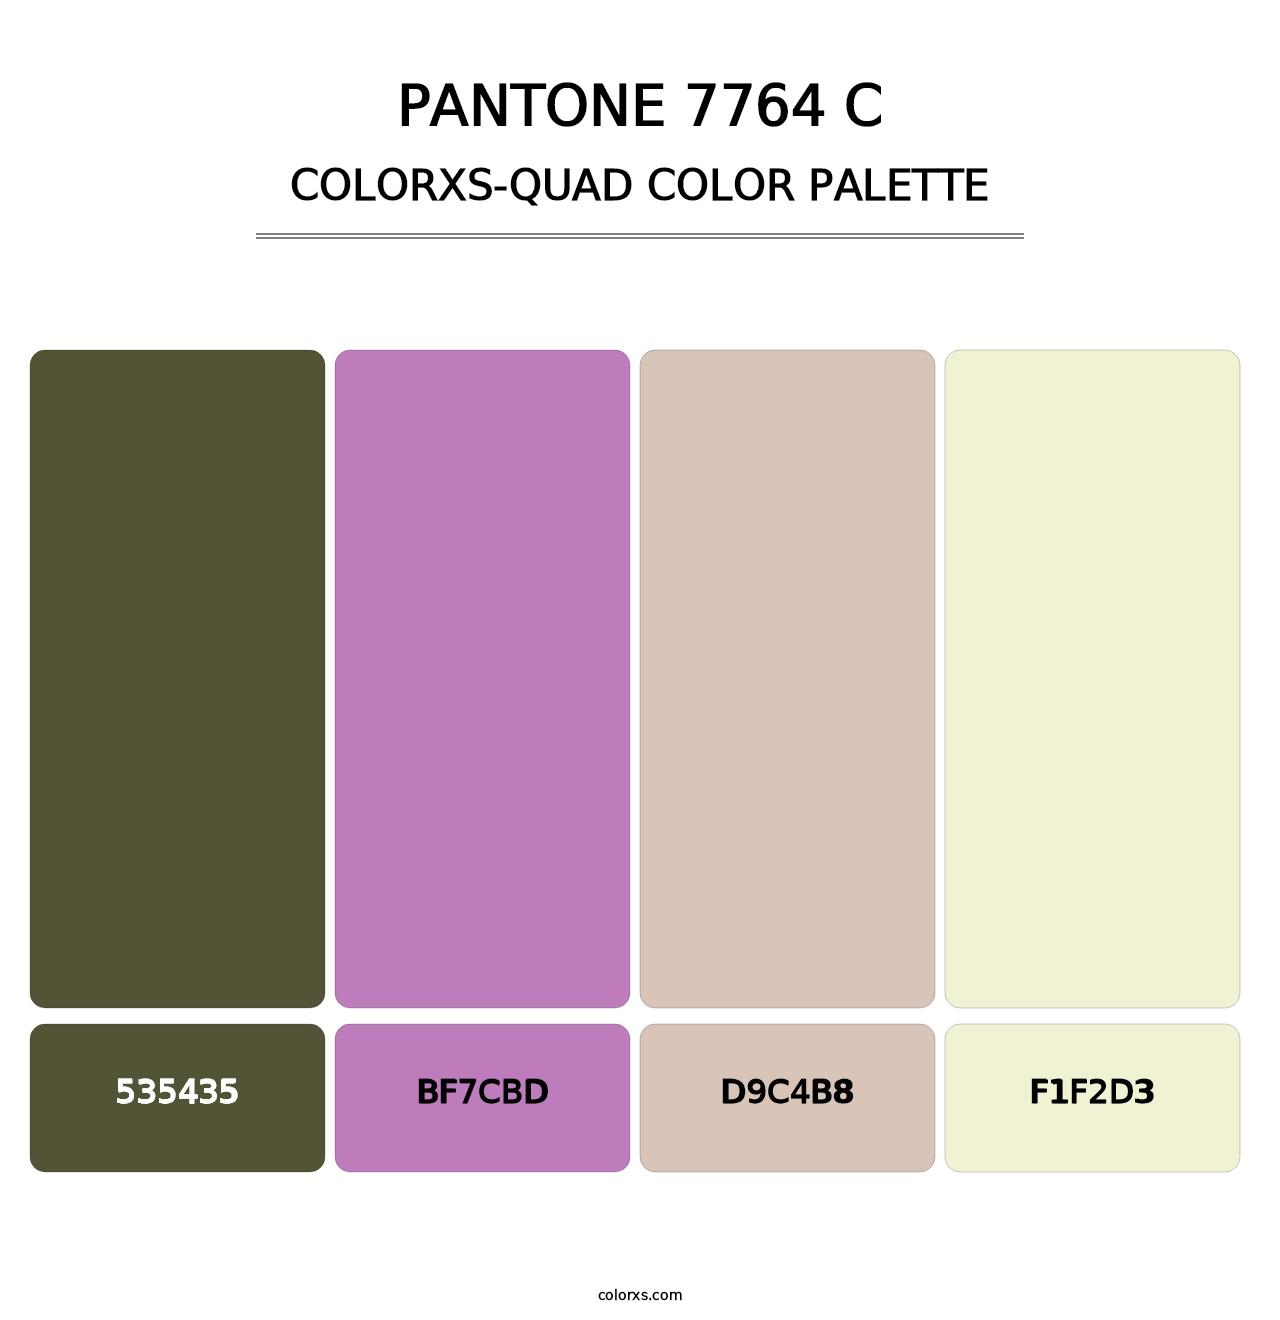 PANTONE 7764 C - Colorxs Quad Palette